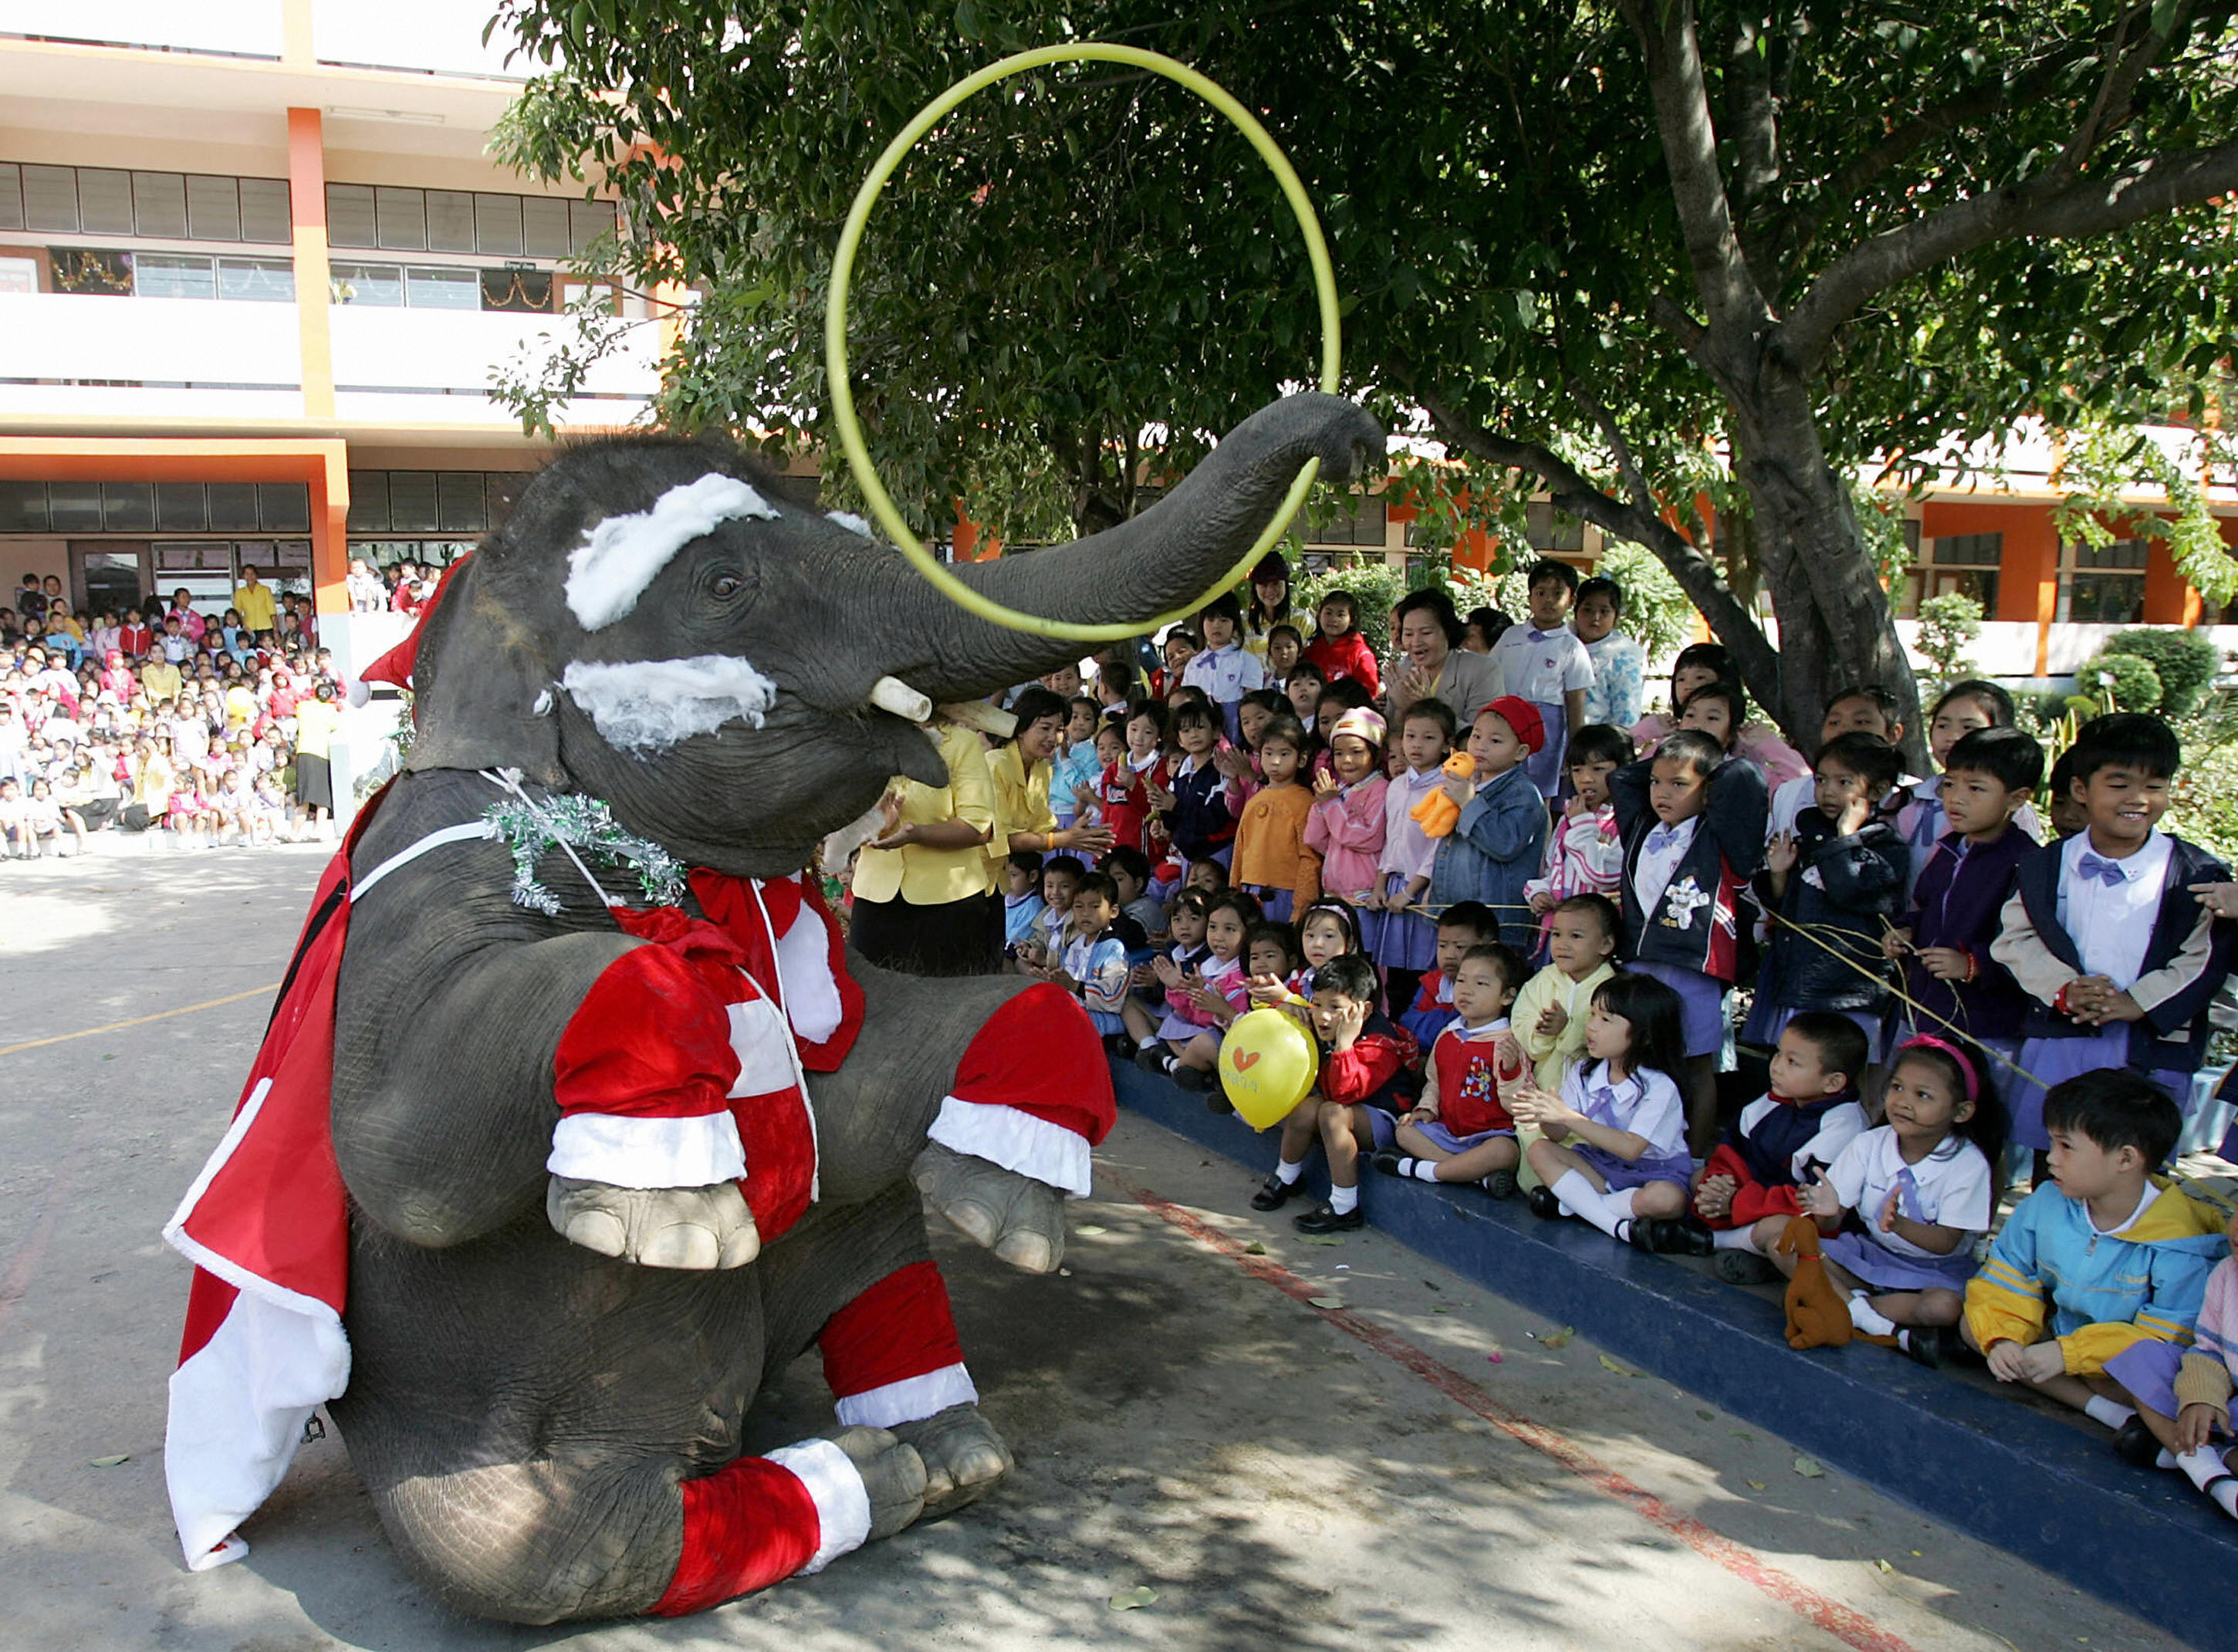 訓練有素的大象也在耶誕節慶表演搖呼拉圈。